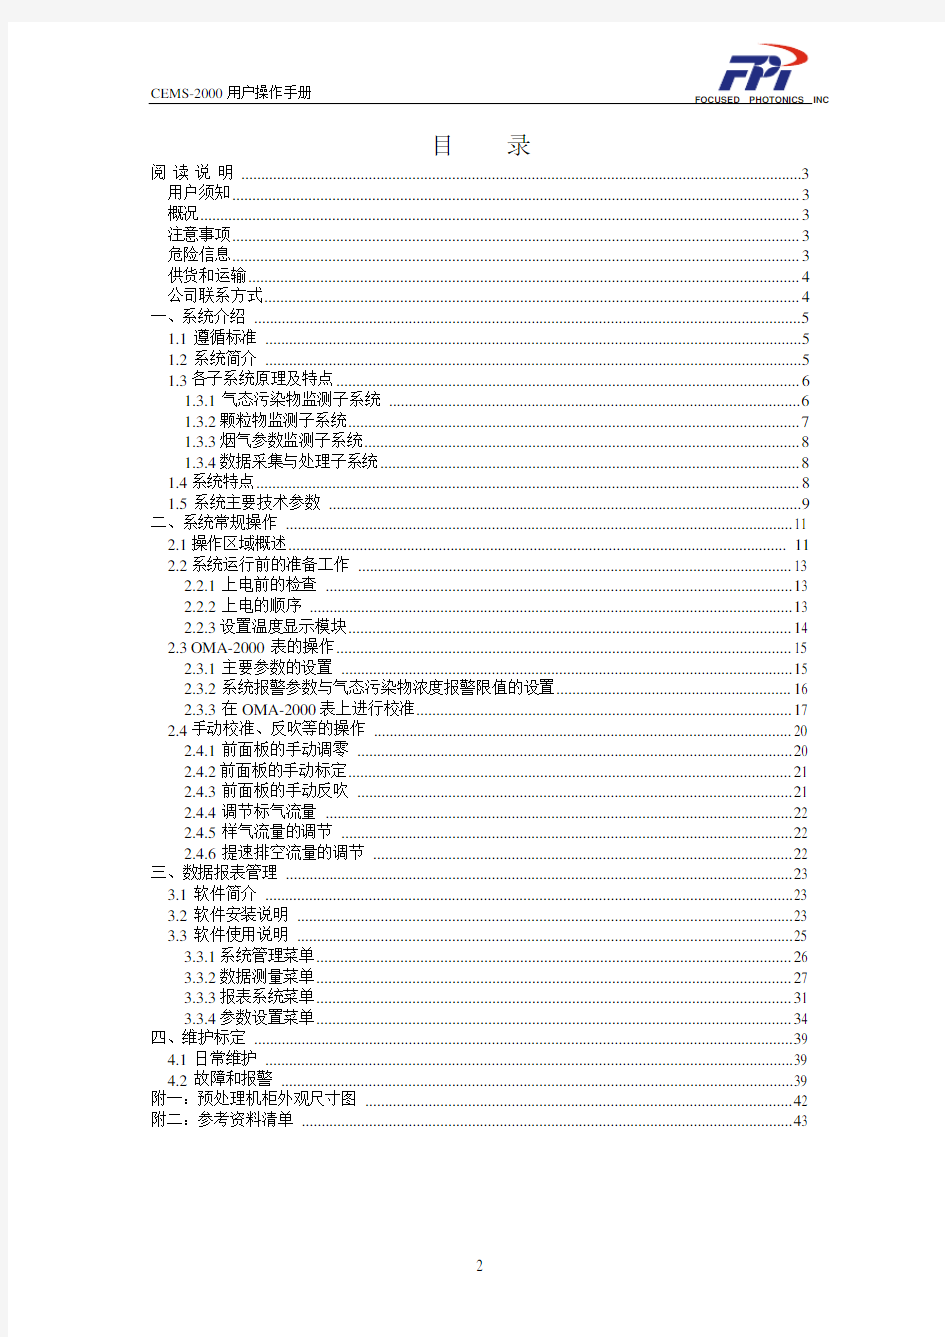 杭州聚光烟气在线监测系统 CEMS-2000说明书